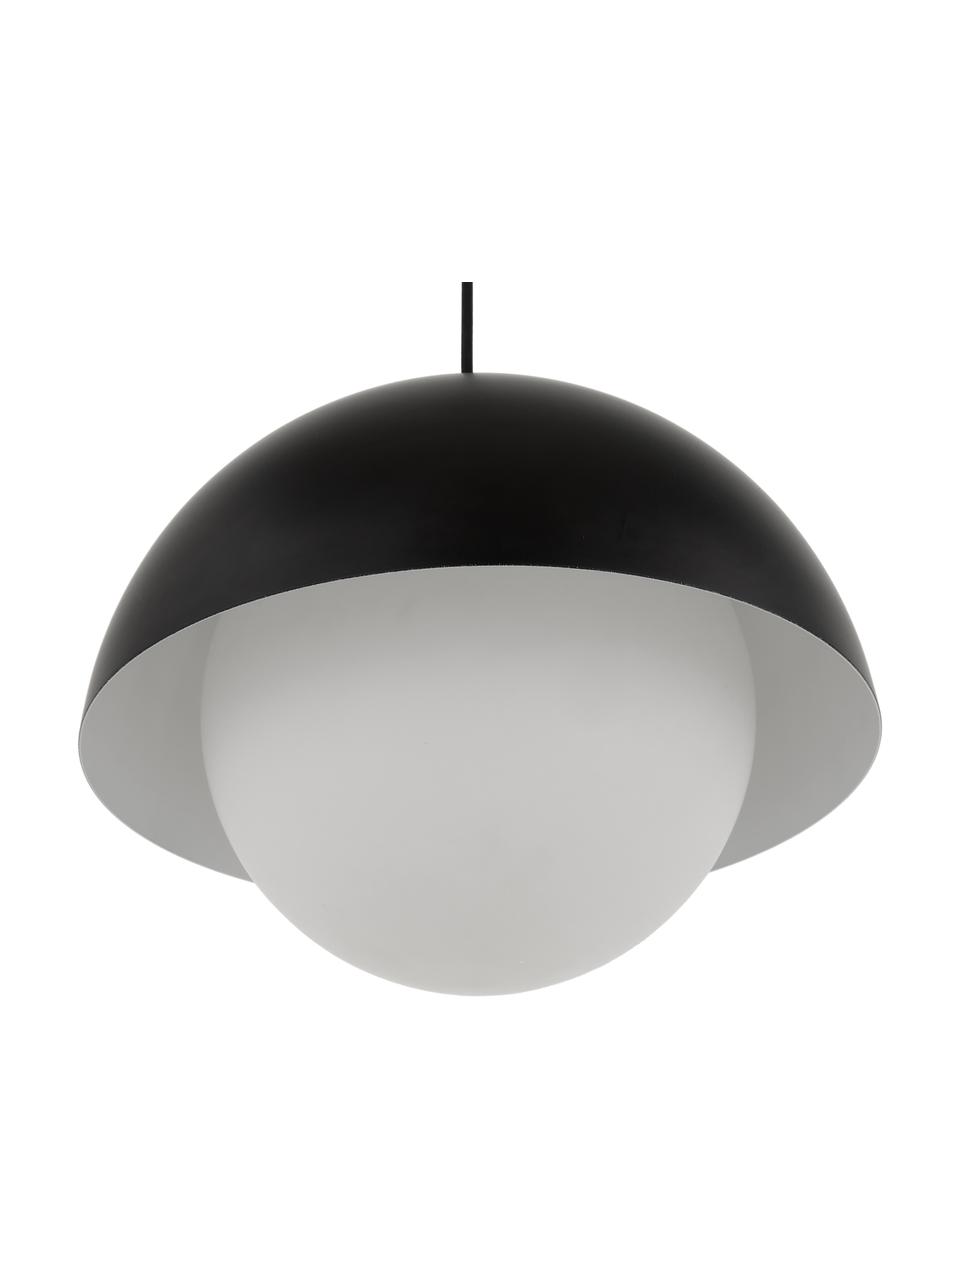 Lámpara de techo Lucille, Anclaje: metal cepillado, Pantalla: vidrio, Cable: cubierto en tela, Negro, blanco, Ø 35 x Al 30 cm